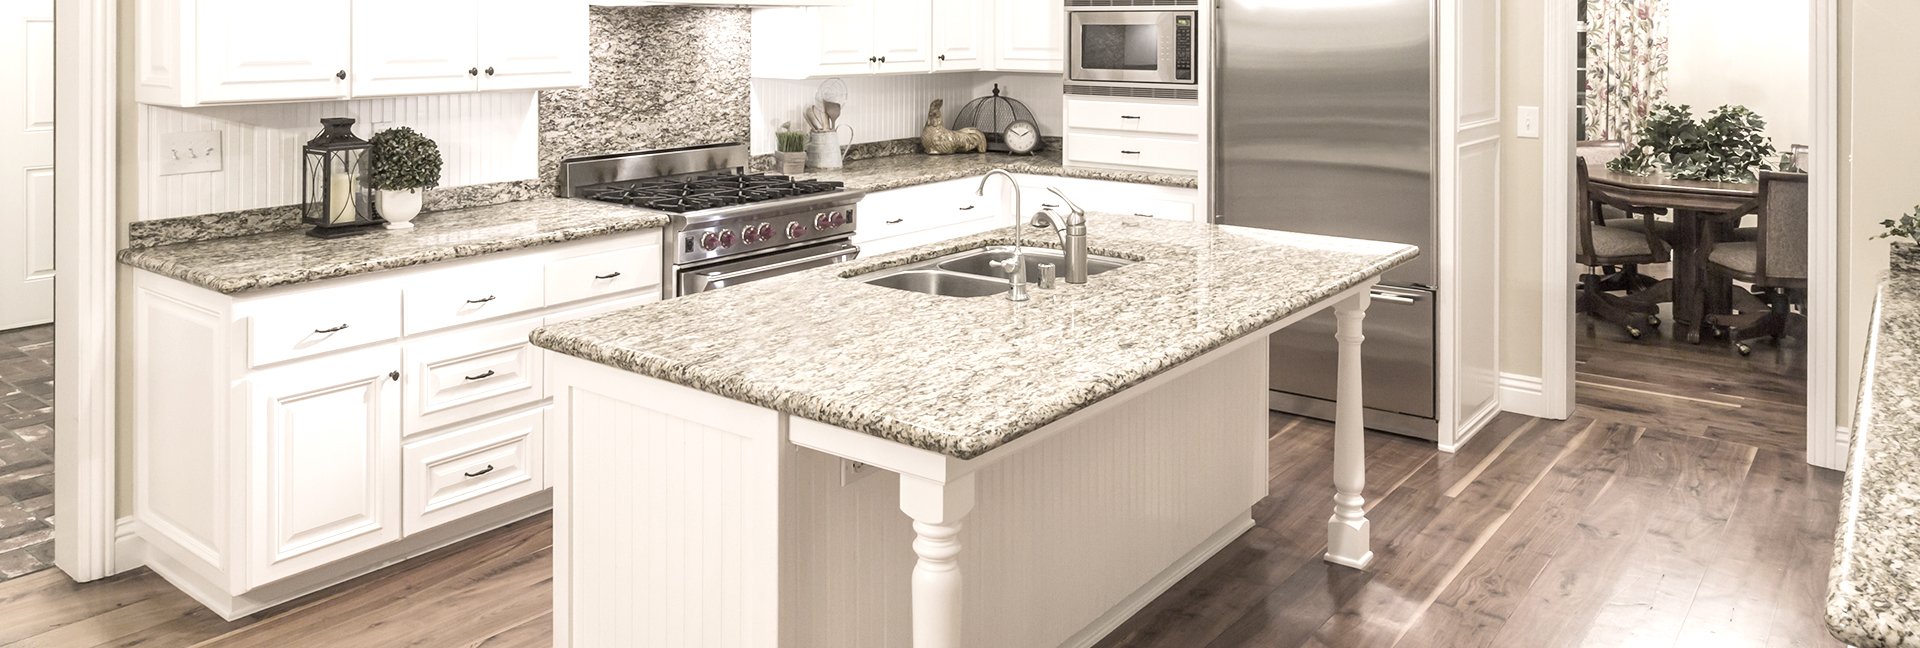 Virtuvė iš akmens dirbinių: akmeninis pilkas stalviršis stalui, virtuvės paviršiams. Gražus virtuvės interjero pavyzdys